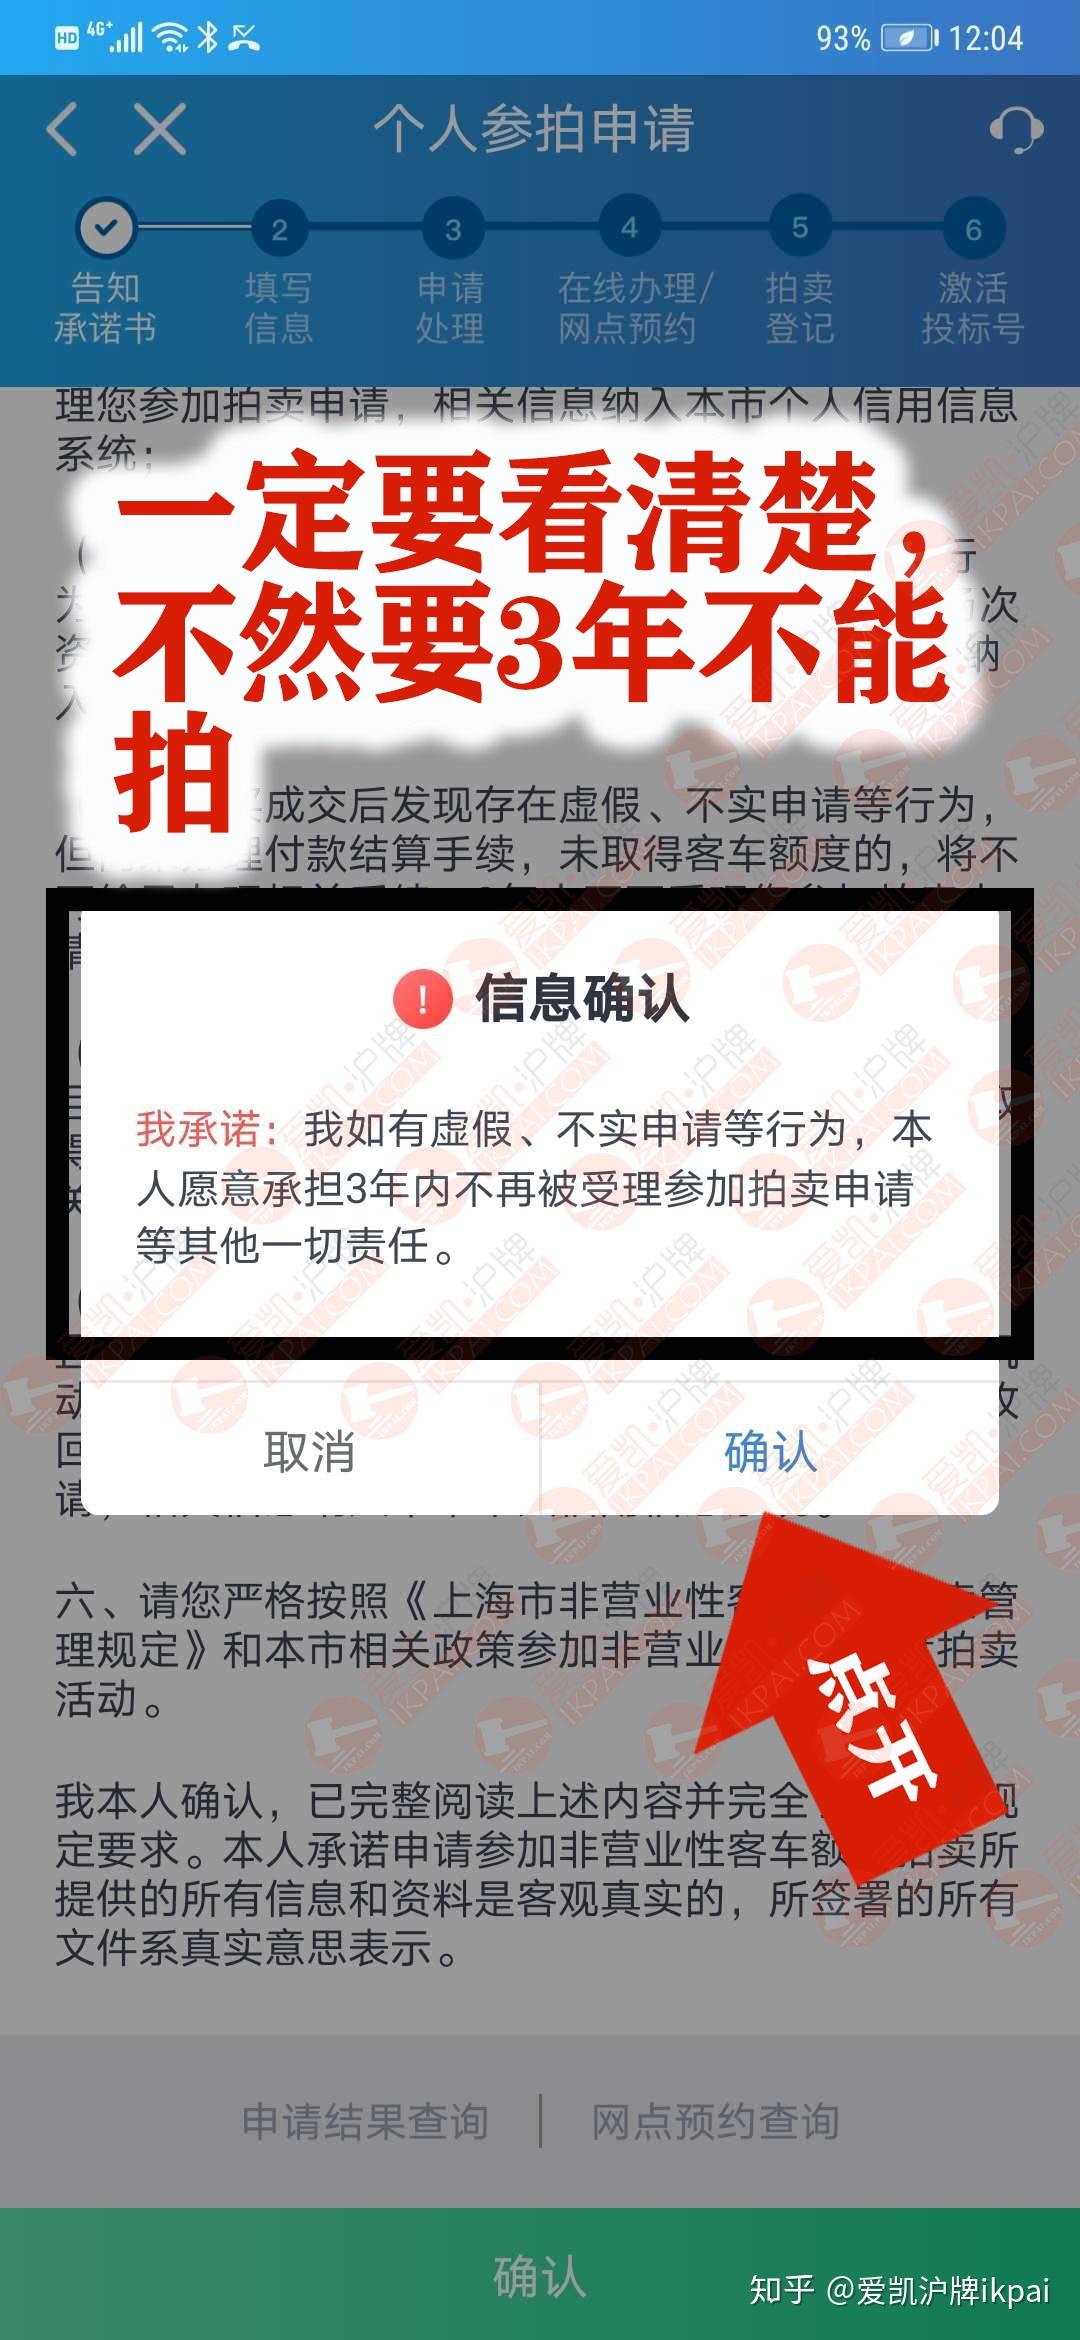 上海牌照网上付款操作流程 - 知乎